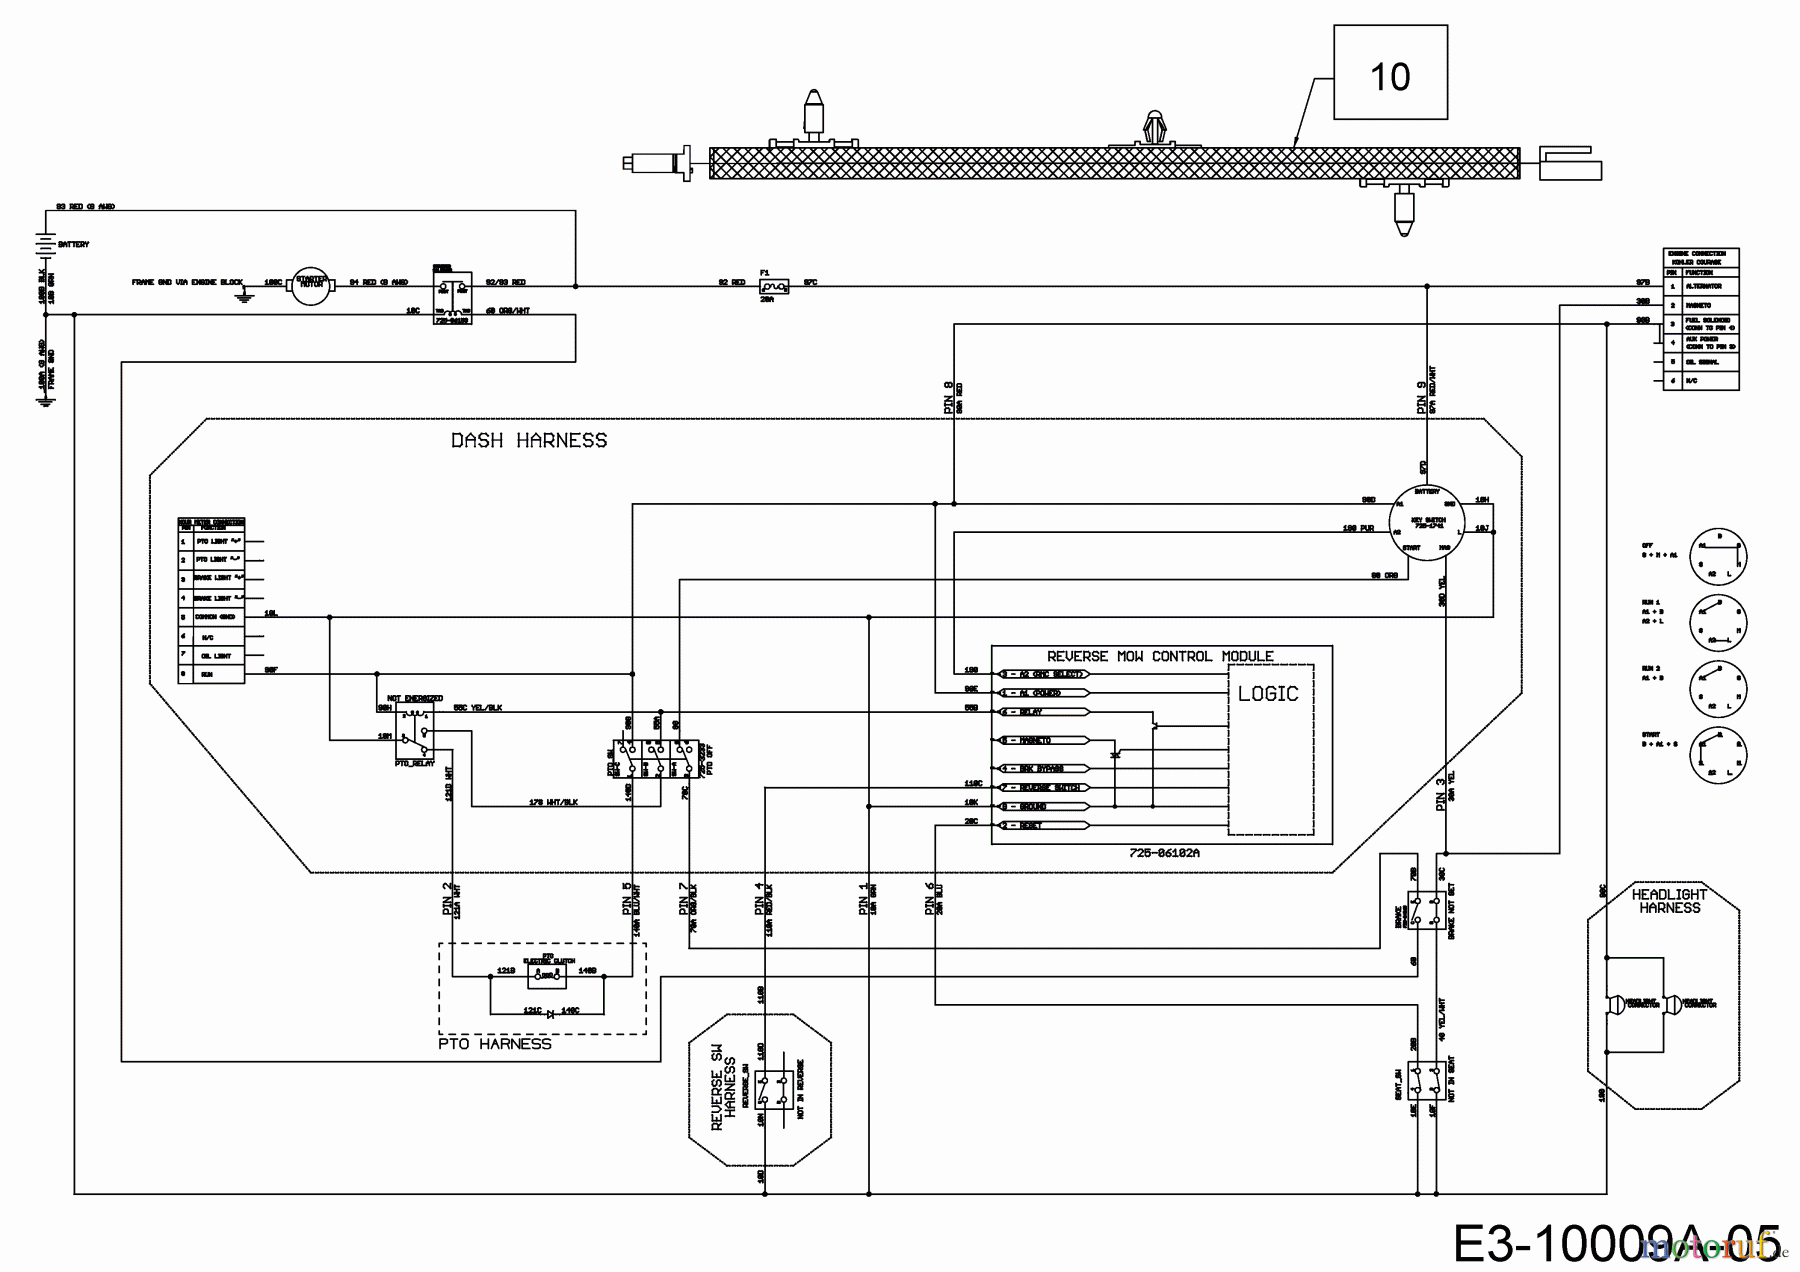  Cub Cadet Rasentraktoren XT 1 OS 107 13A8A1CS603  (2017) Schaltplan Elektromagnetkupplung